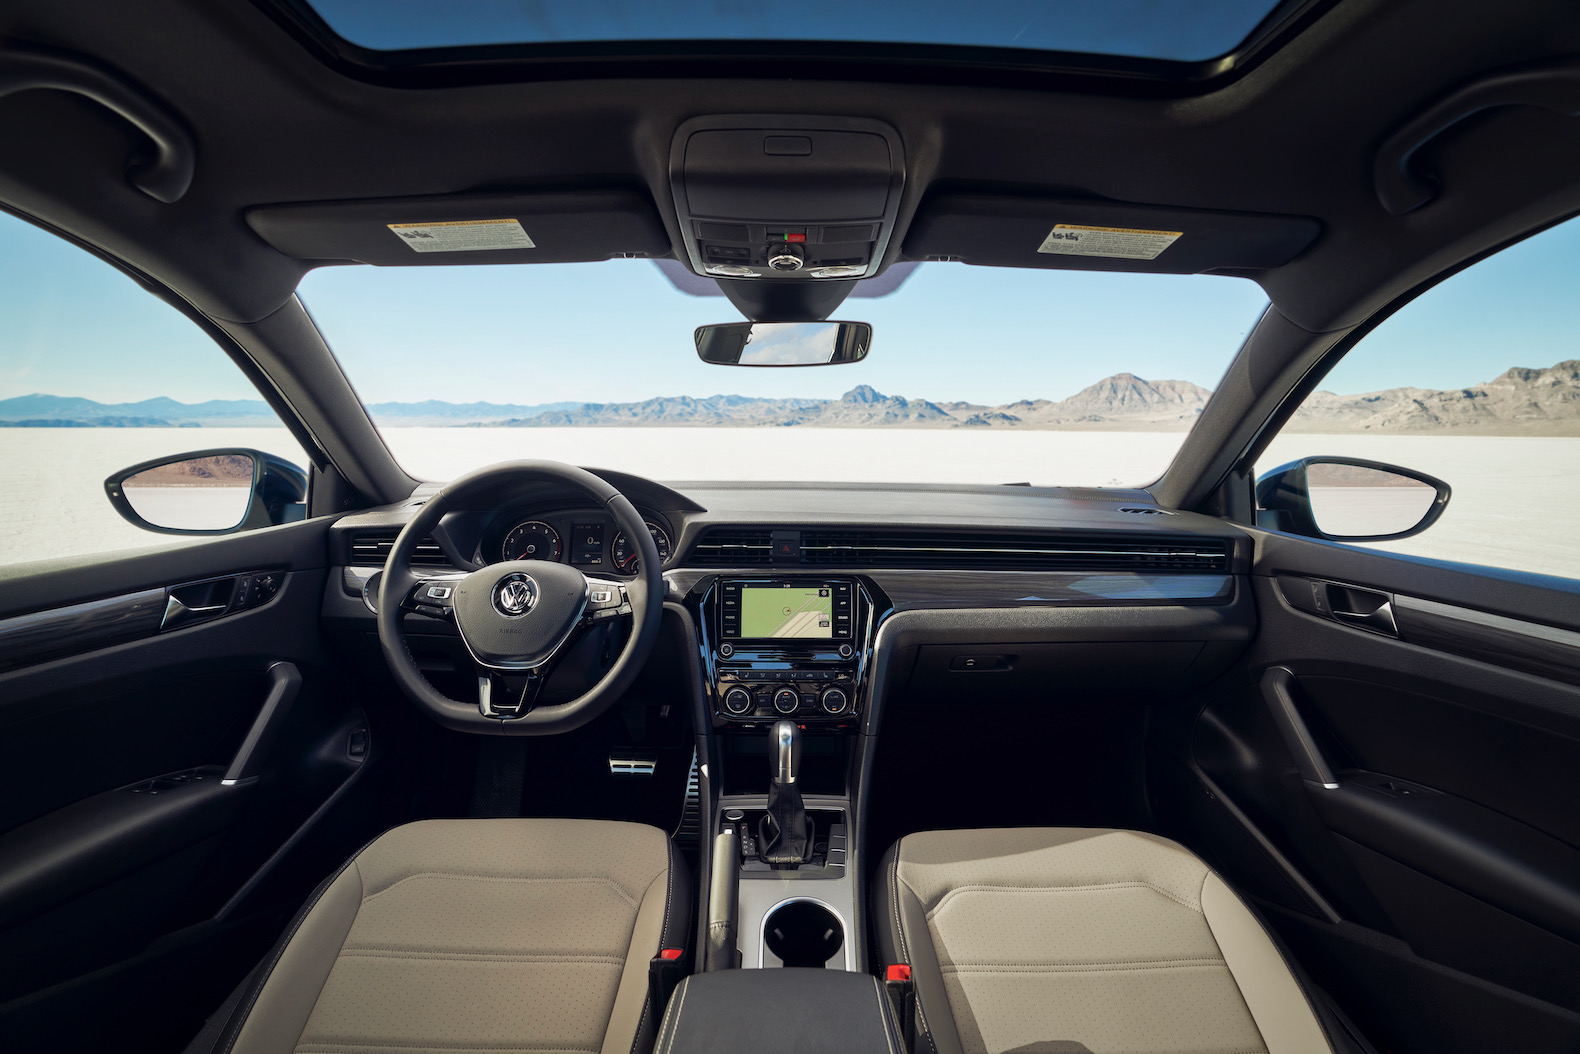 2021 Volkswagen Passat Review: Comfortable and Spacious - The Torque Report